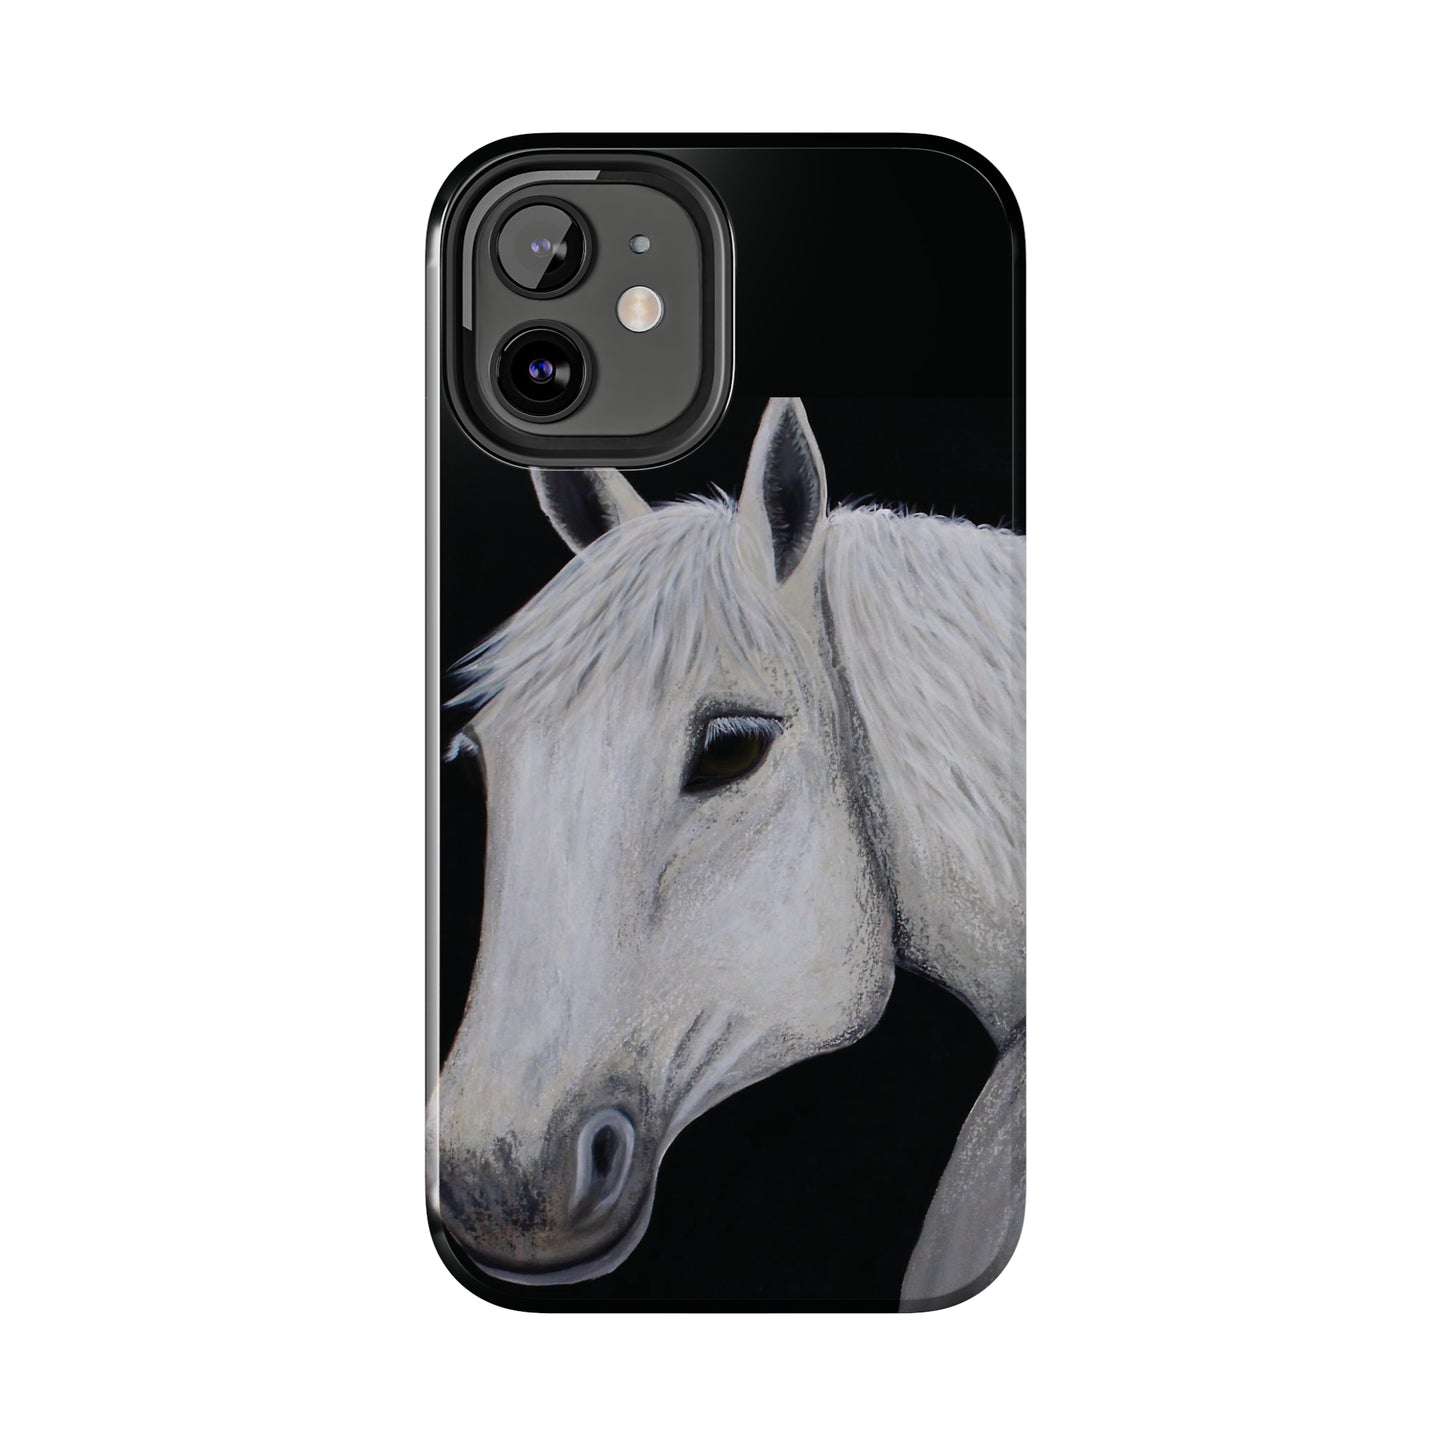 Tough Phone Case - Original art phone case - Slim phone case - Equestrian Art phone case - Ghost Horse Phone case